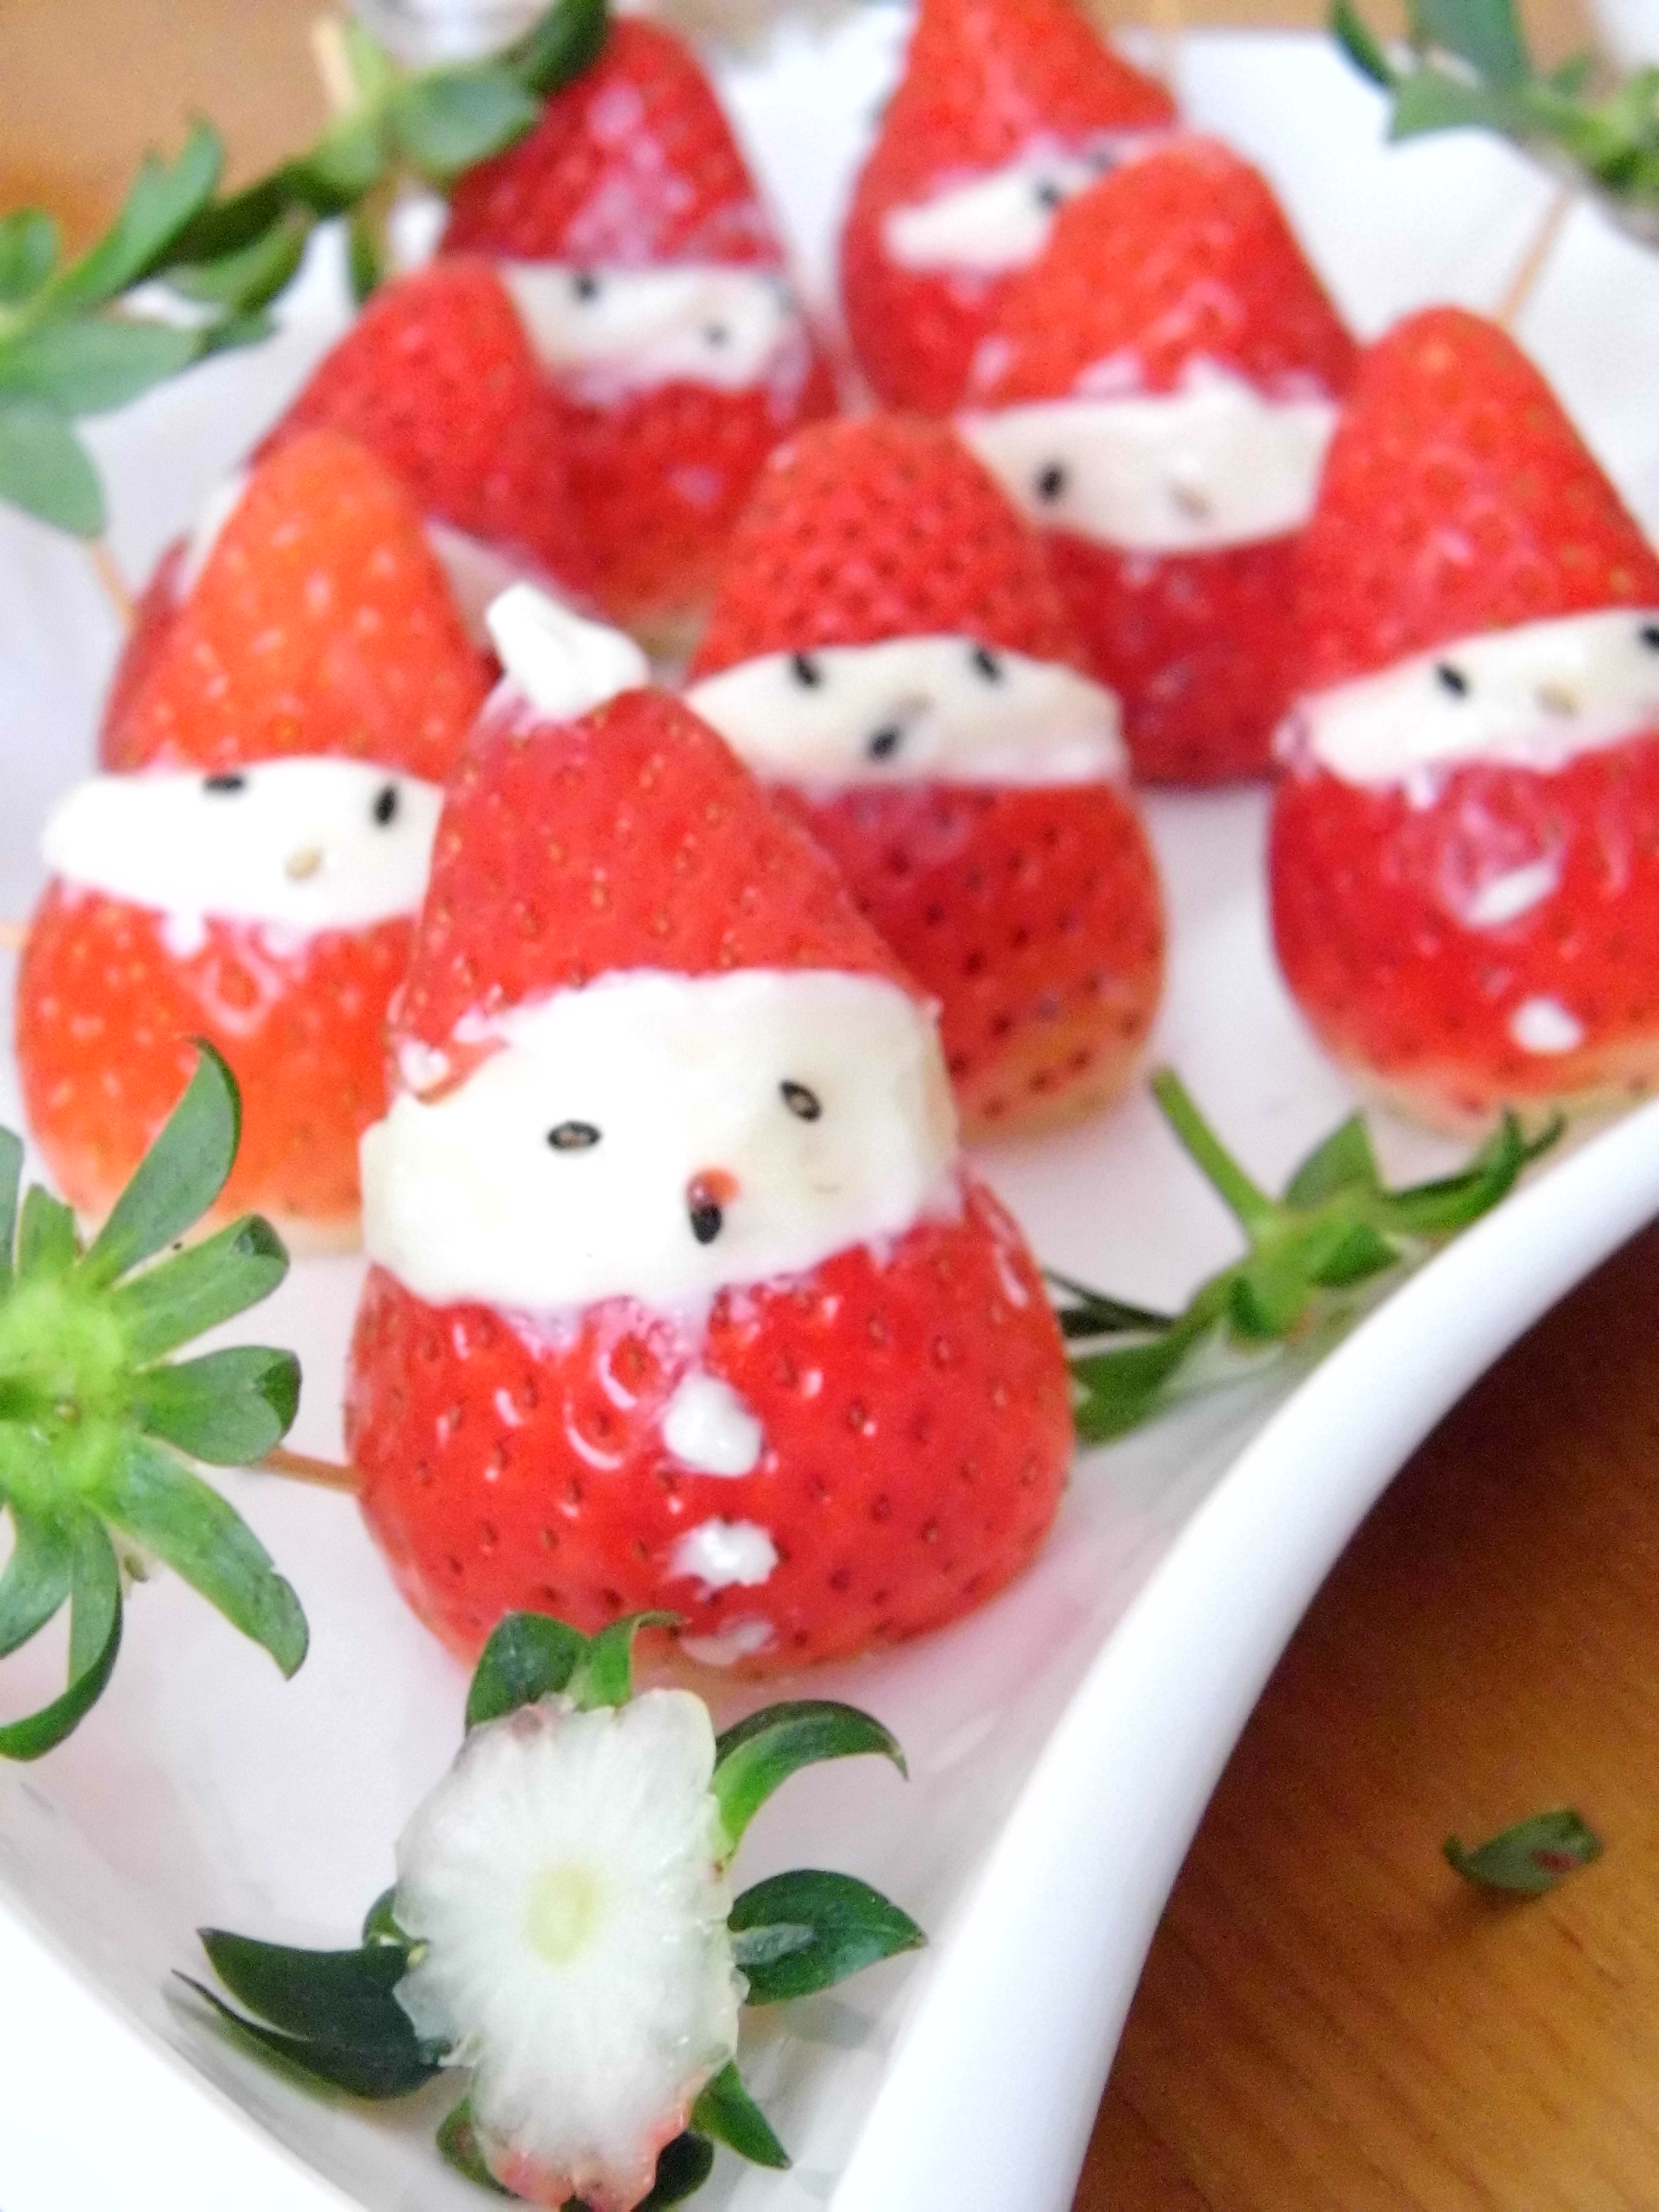 草莓沙拉